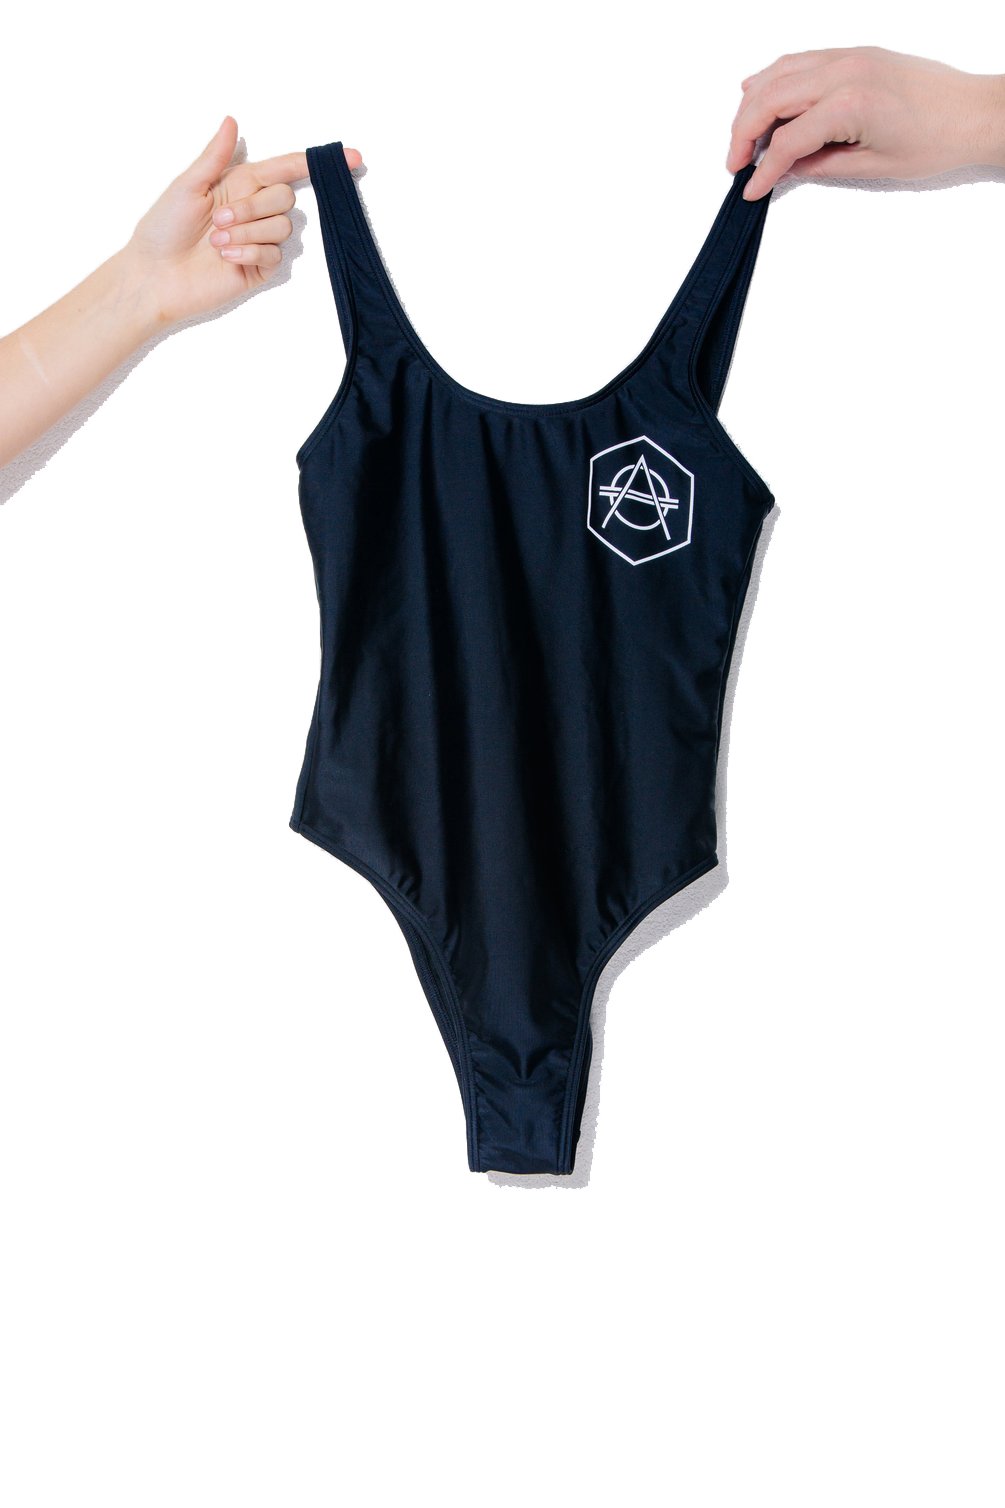 Hexagon Swimsuit - HEXAGON - Don Diablo - Hexagon